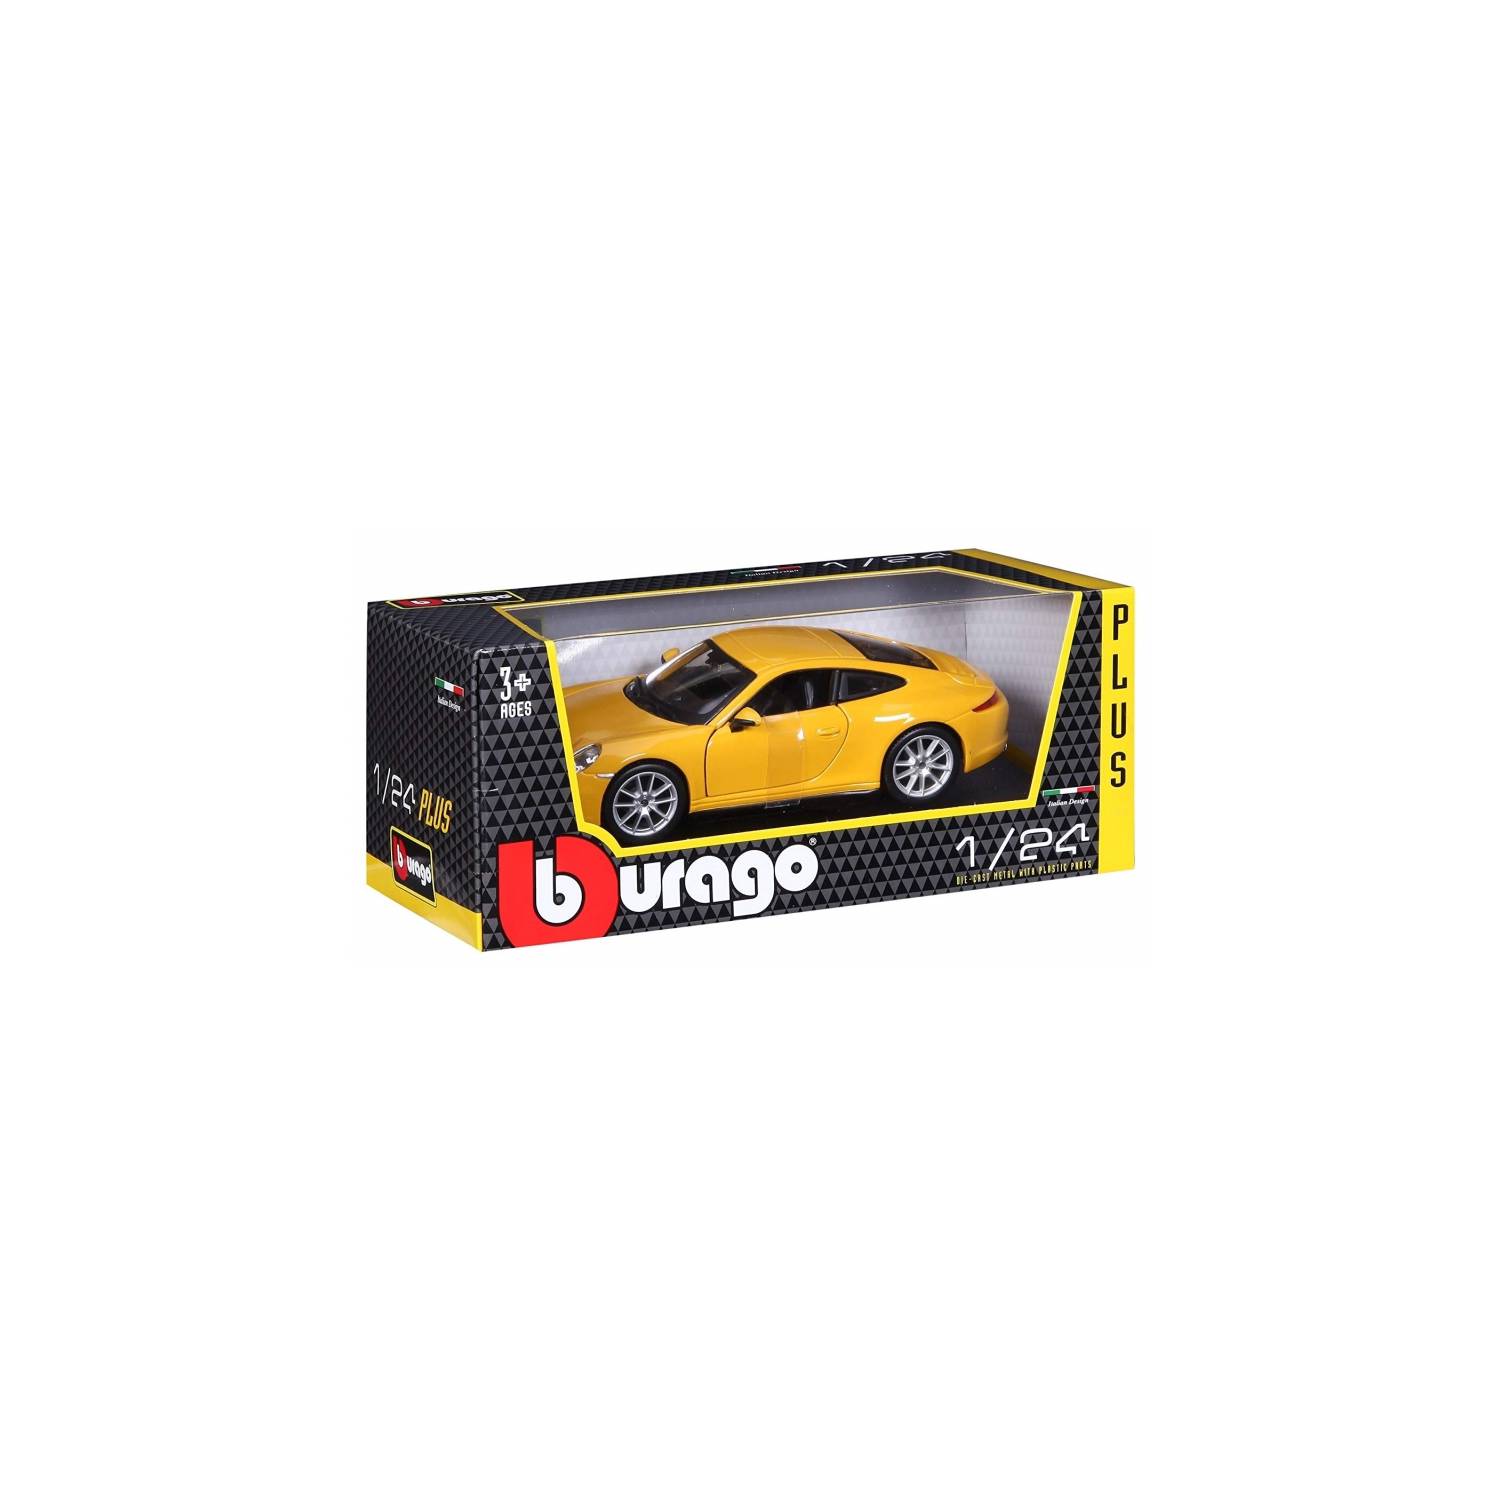 BBURAGO BURAGO 21065 1:24 PORSCHE 911 CARERRA S